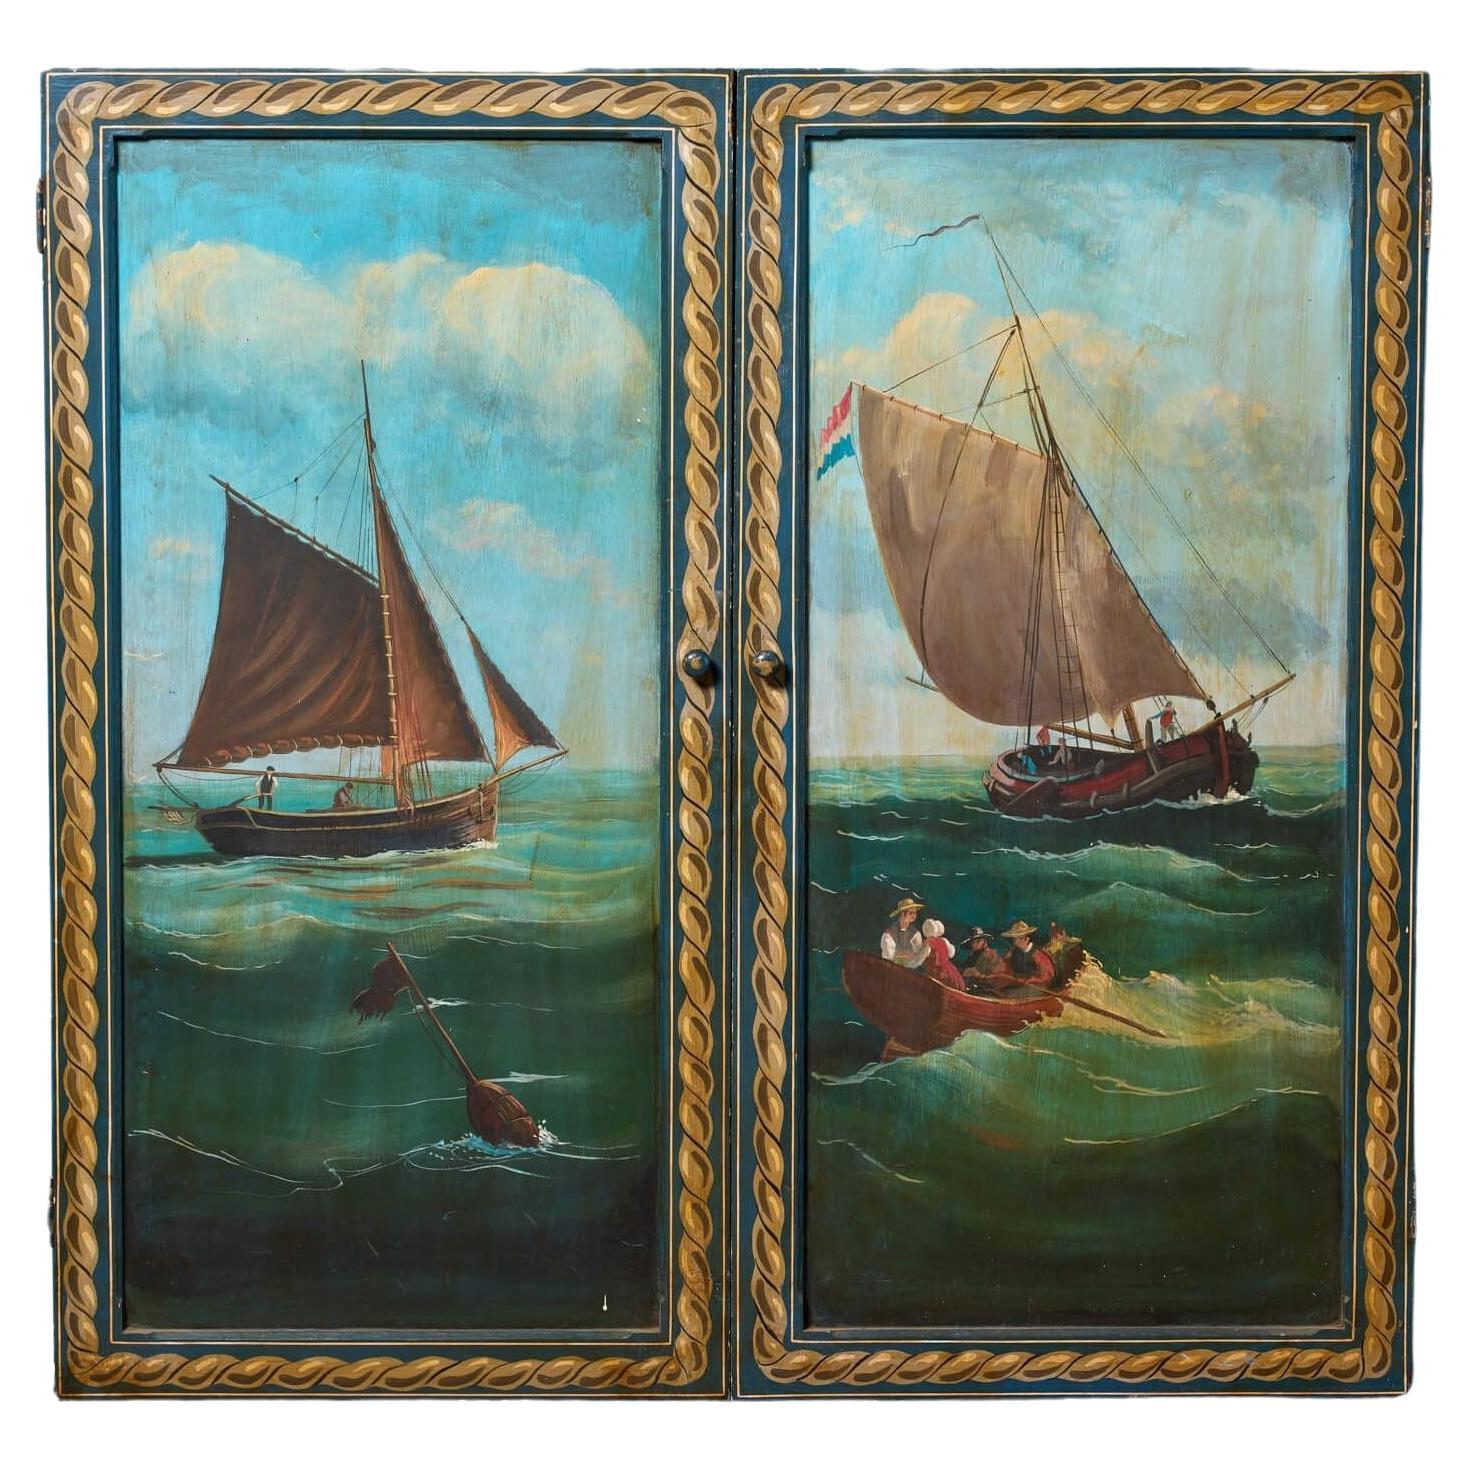 Set handbemalter Schranktüren mit einer maritimen Szene, die eine maritime Szene darstellt